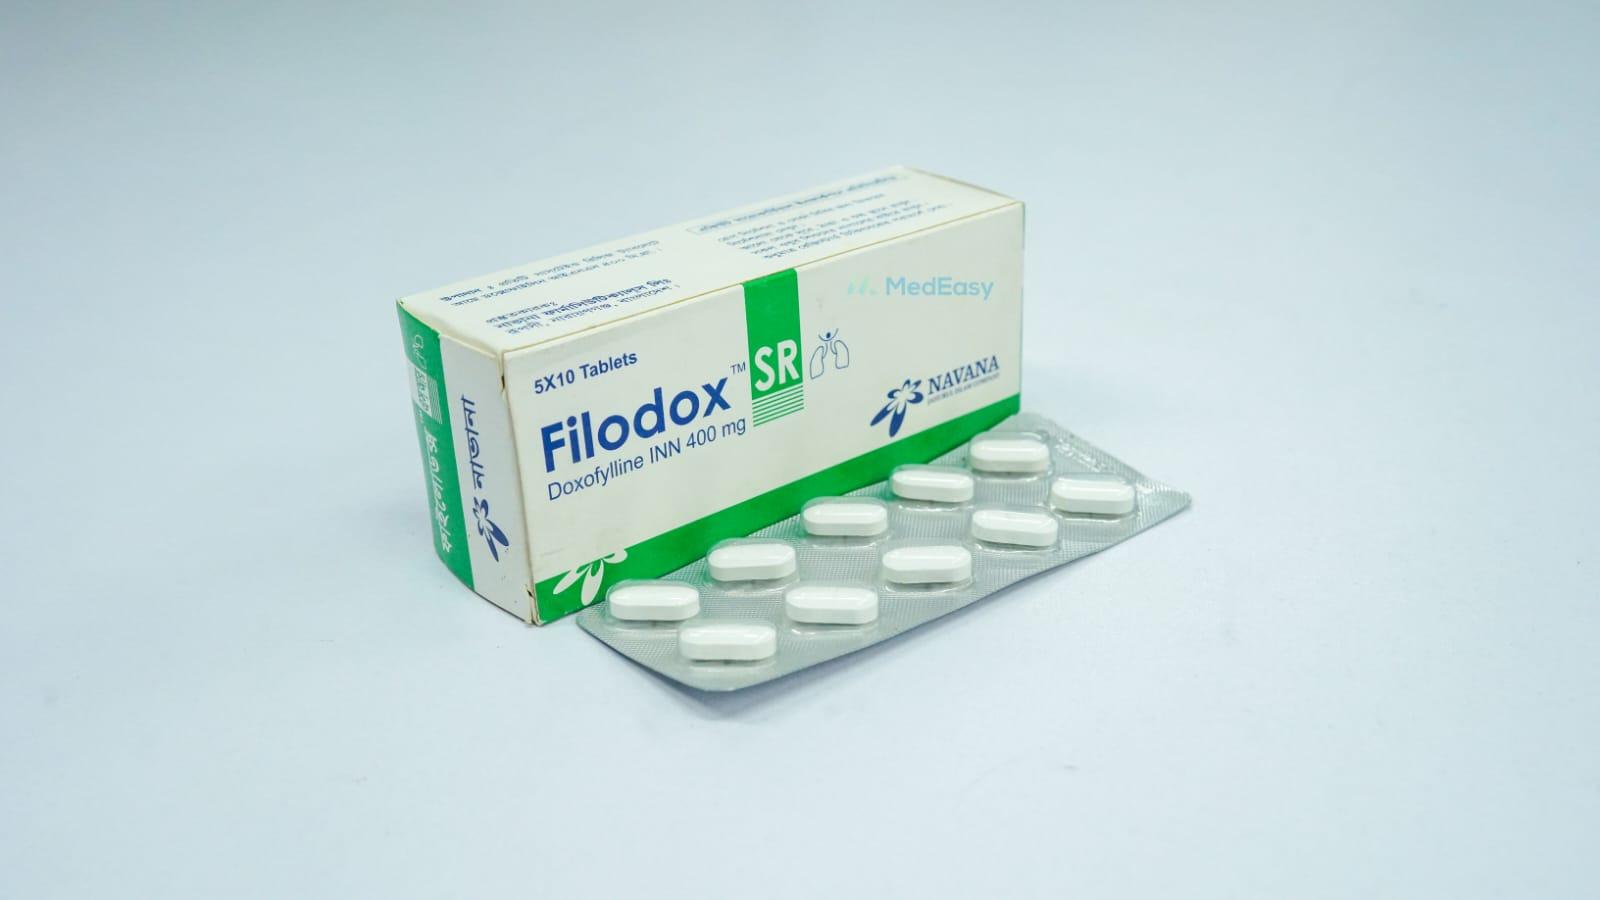 Filodox SR